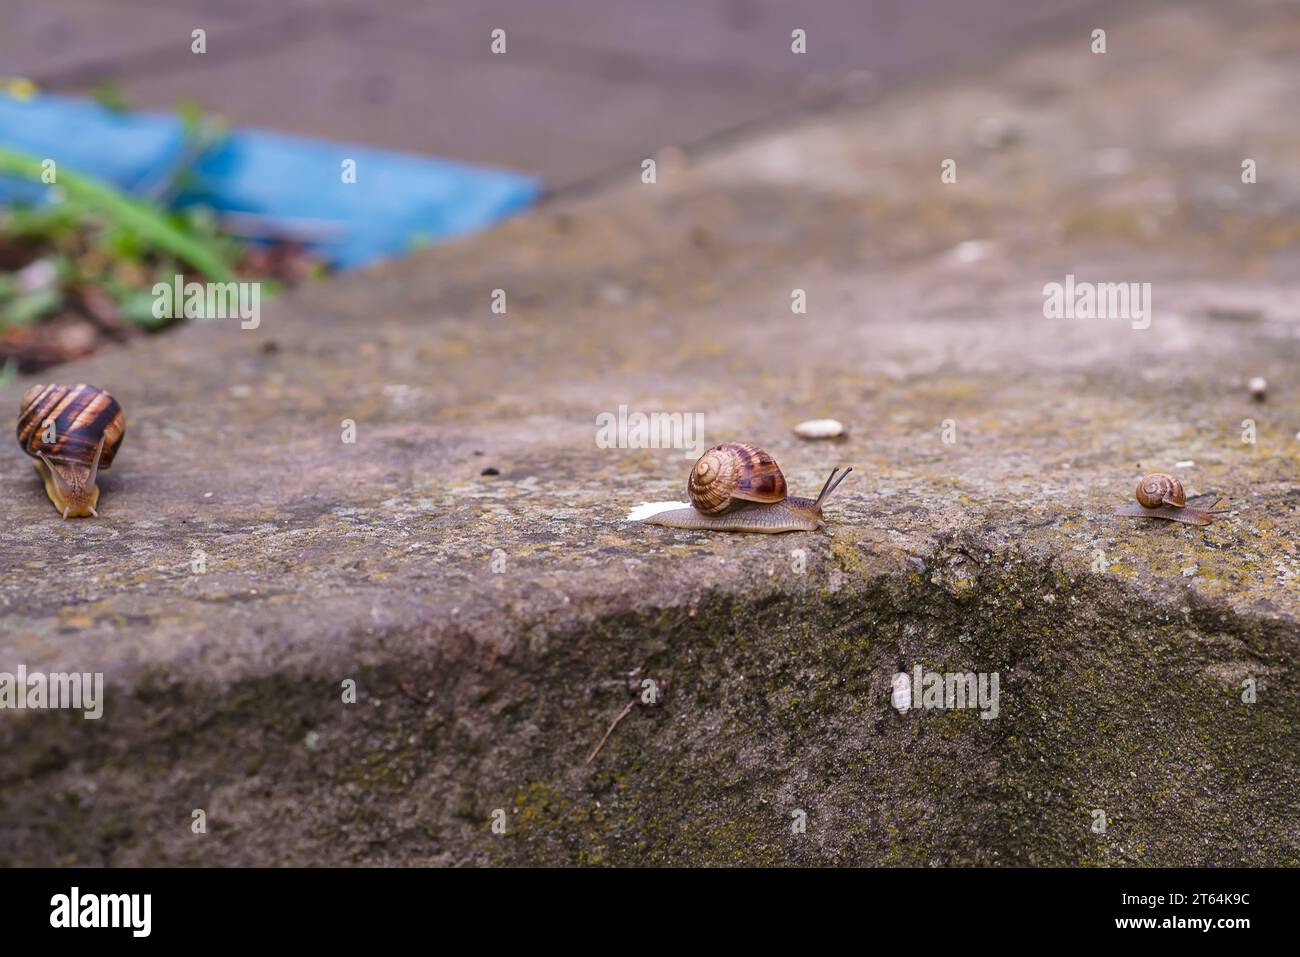 L'image représente un escargot de raisin rampant sur le sol. Sa grande coquille enroulée a des tons terreux. L'escargot se distingue dans le contexte du Banque D'Images